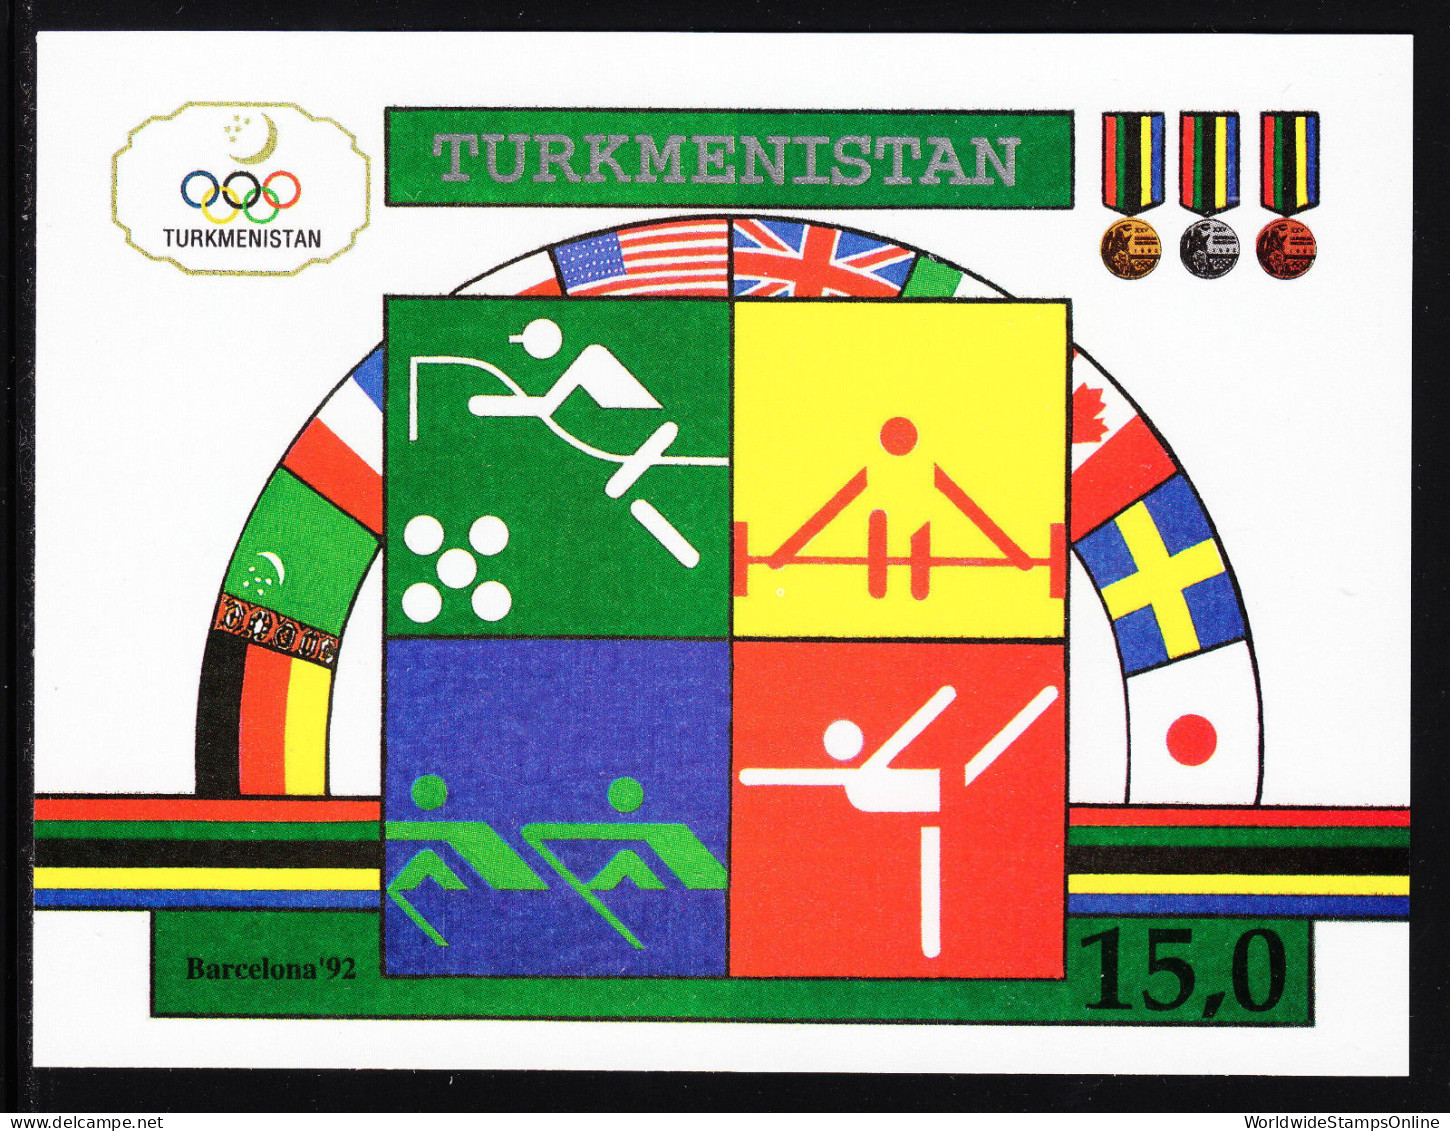 TURKMENISTAN — SCOTT 23 — 1992 15R OLYMPICS SHEET — MNH — SCV $11.00 - Turkménistan